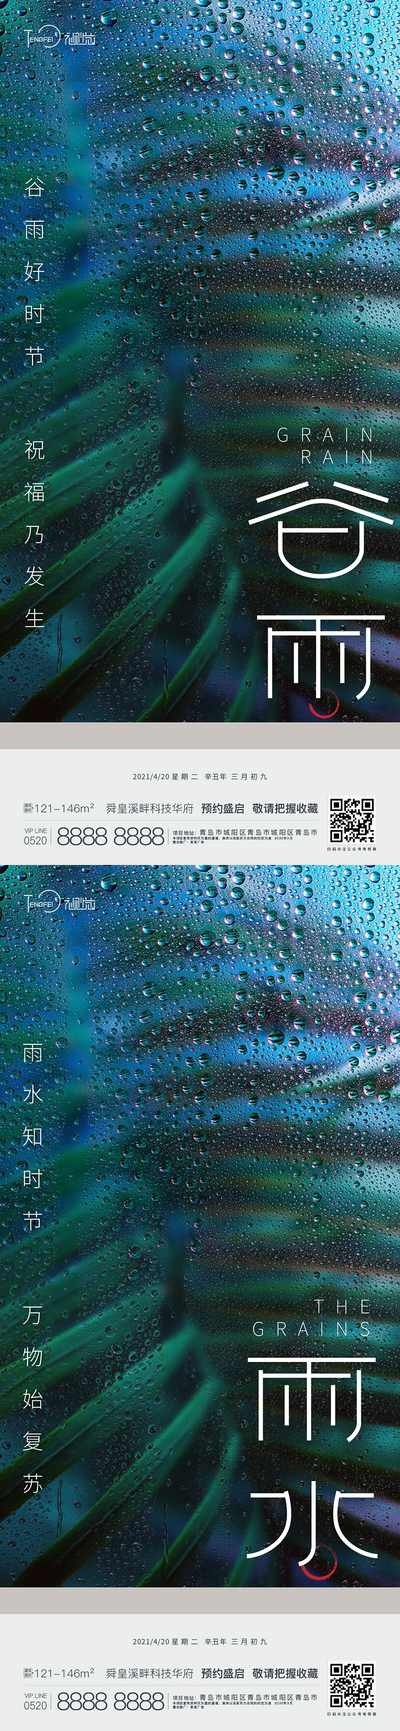 【南门网】海报 二十四节气 谷雨 雨水  下雨  雨滴 水珠 叶子